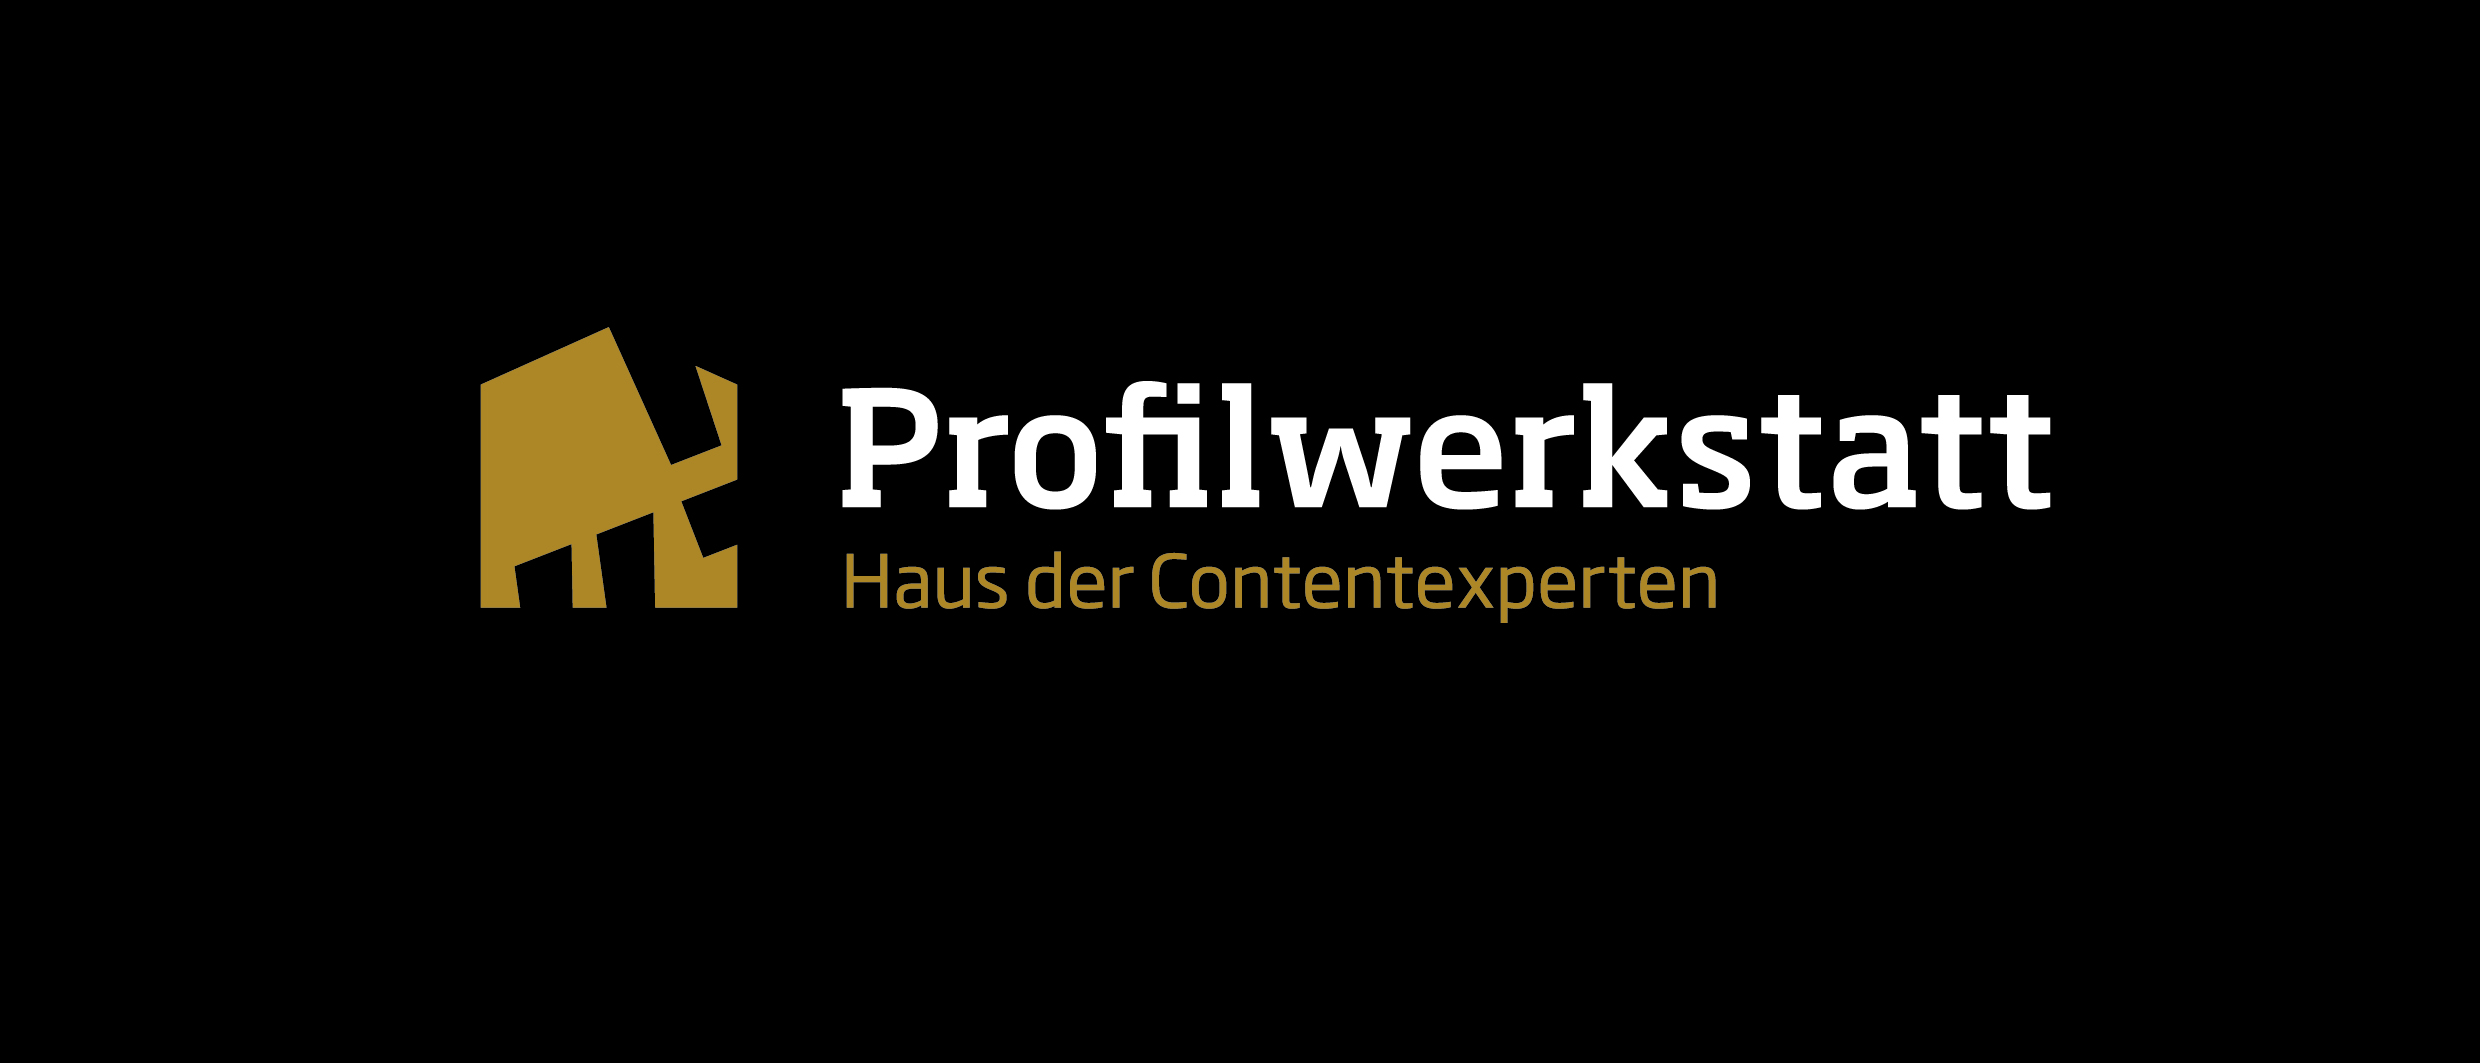 Bild 1 Profilwerkstatt GmbH in München